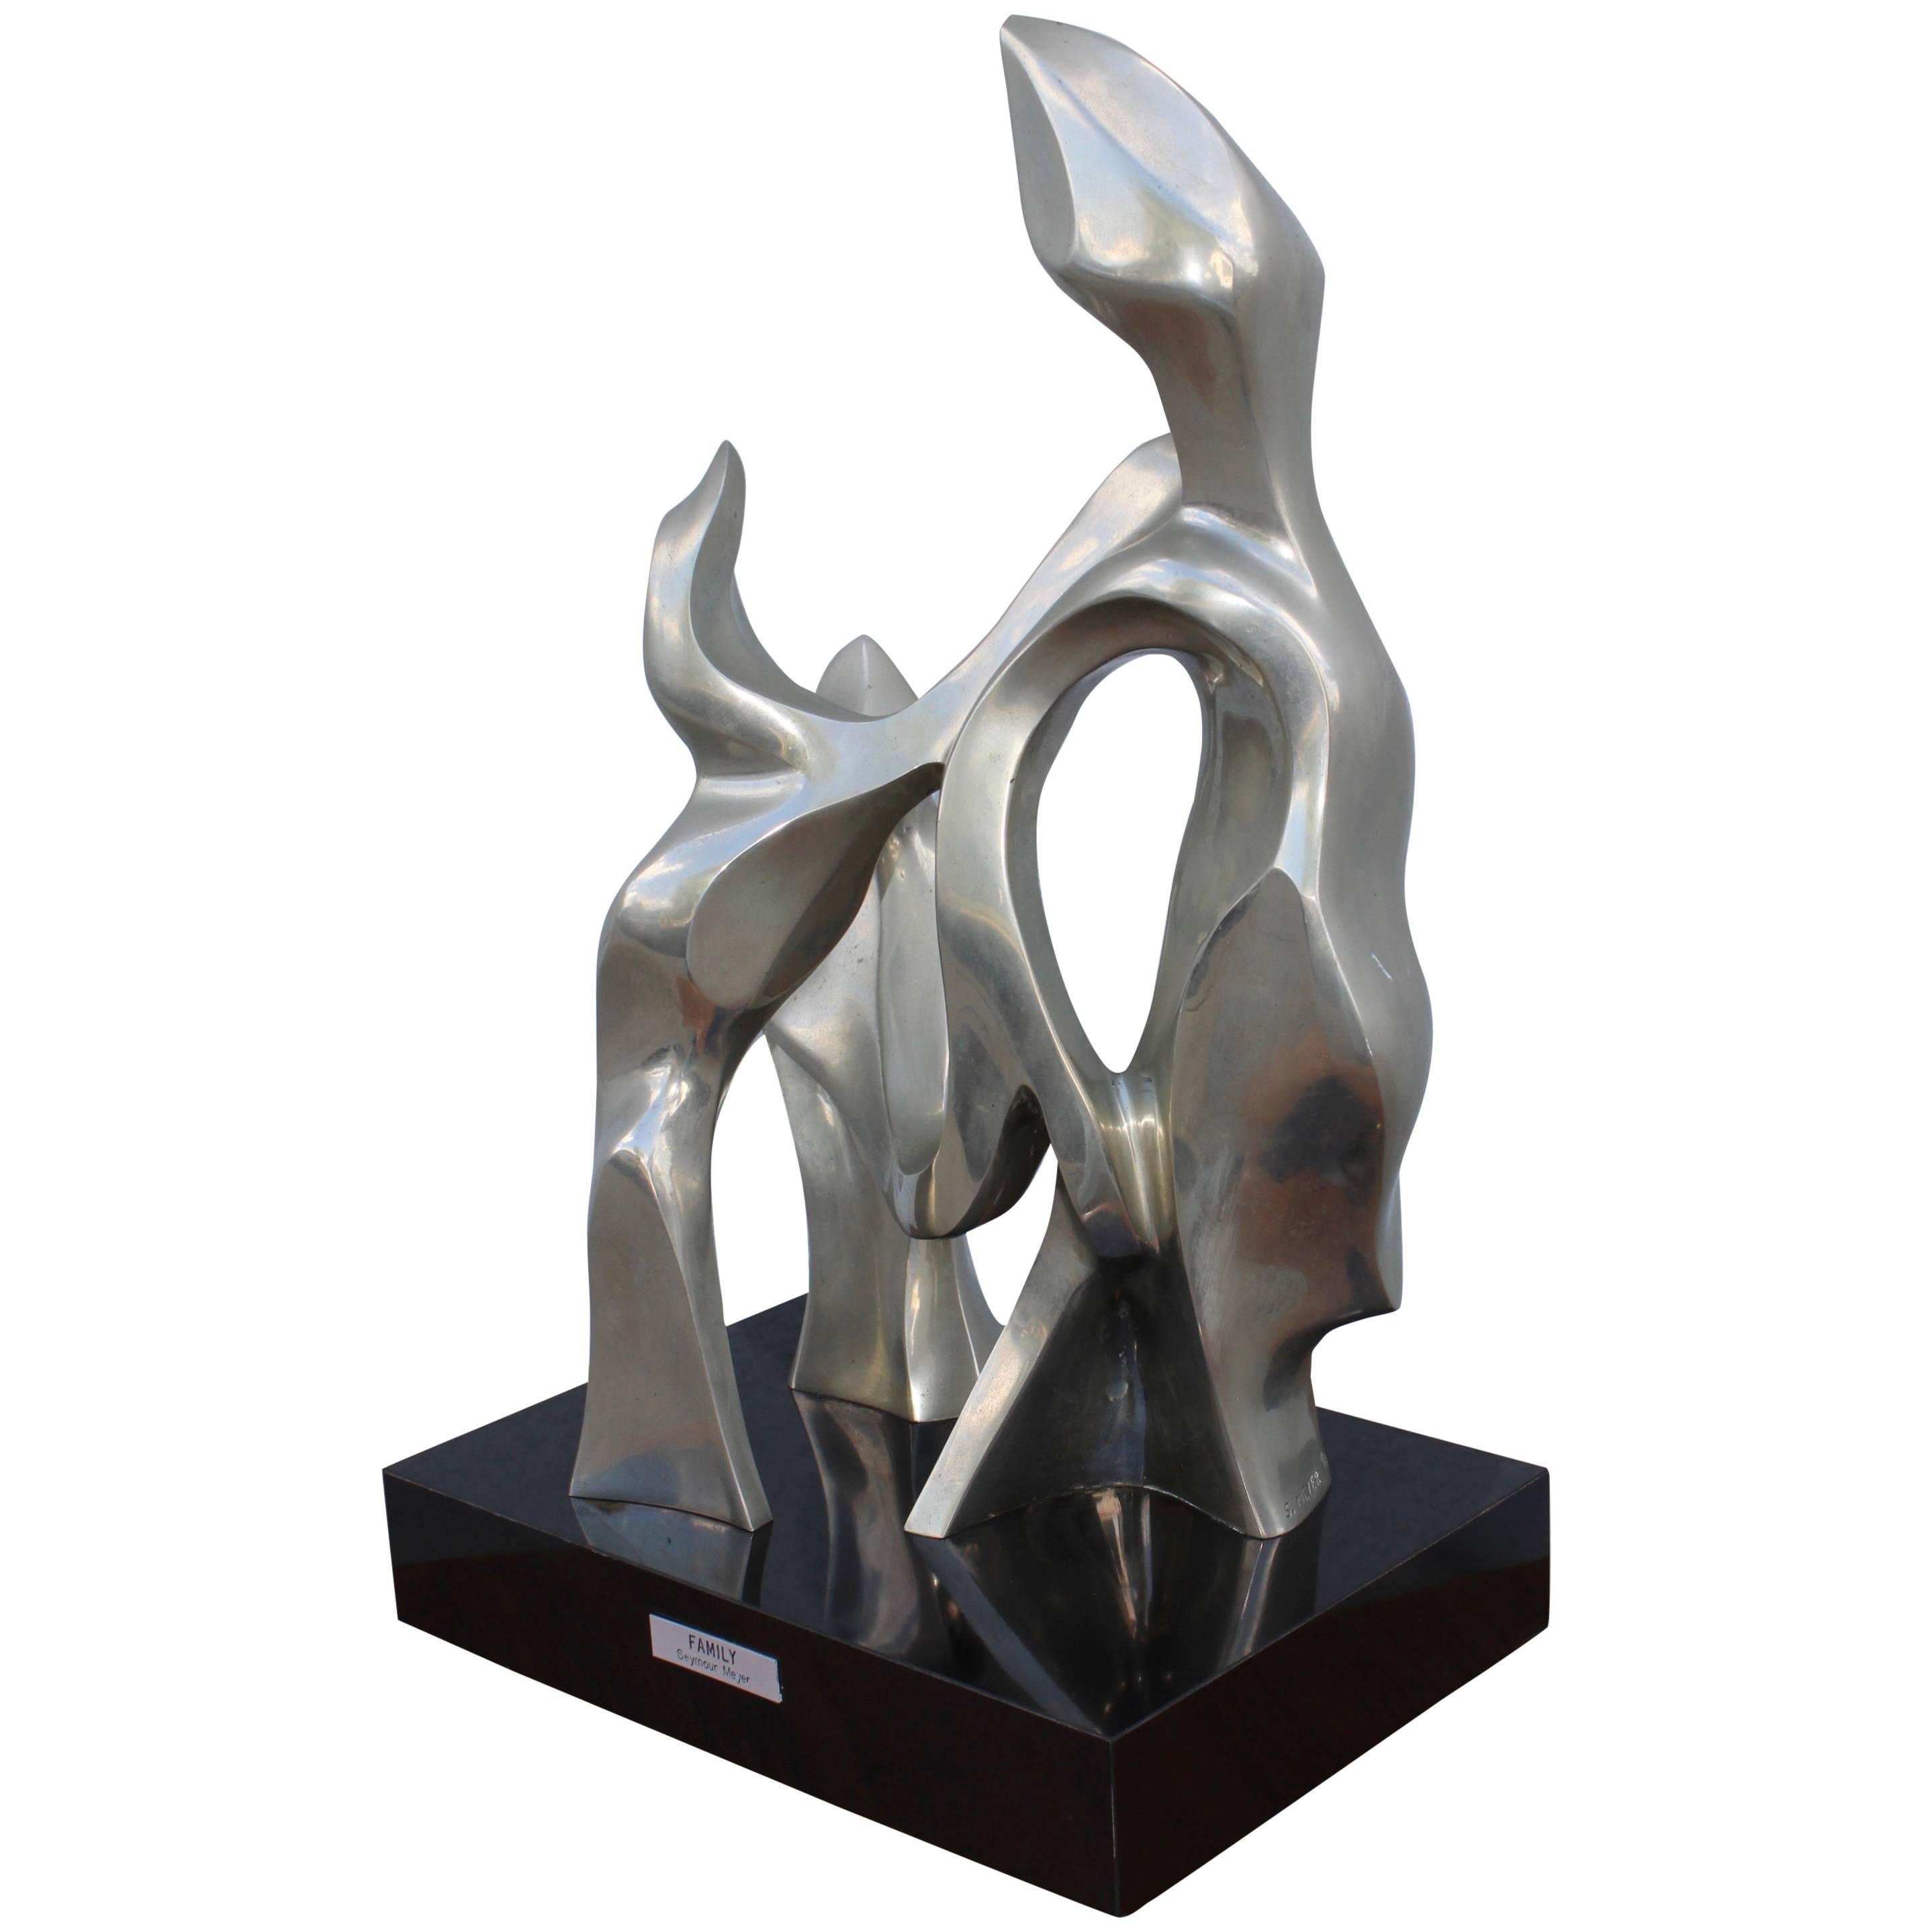 Seymour Meyer Modernist Abstract Bronze Sculpture 